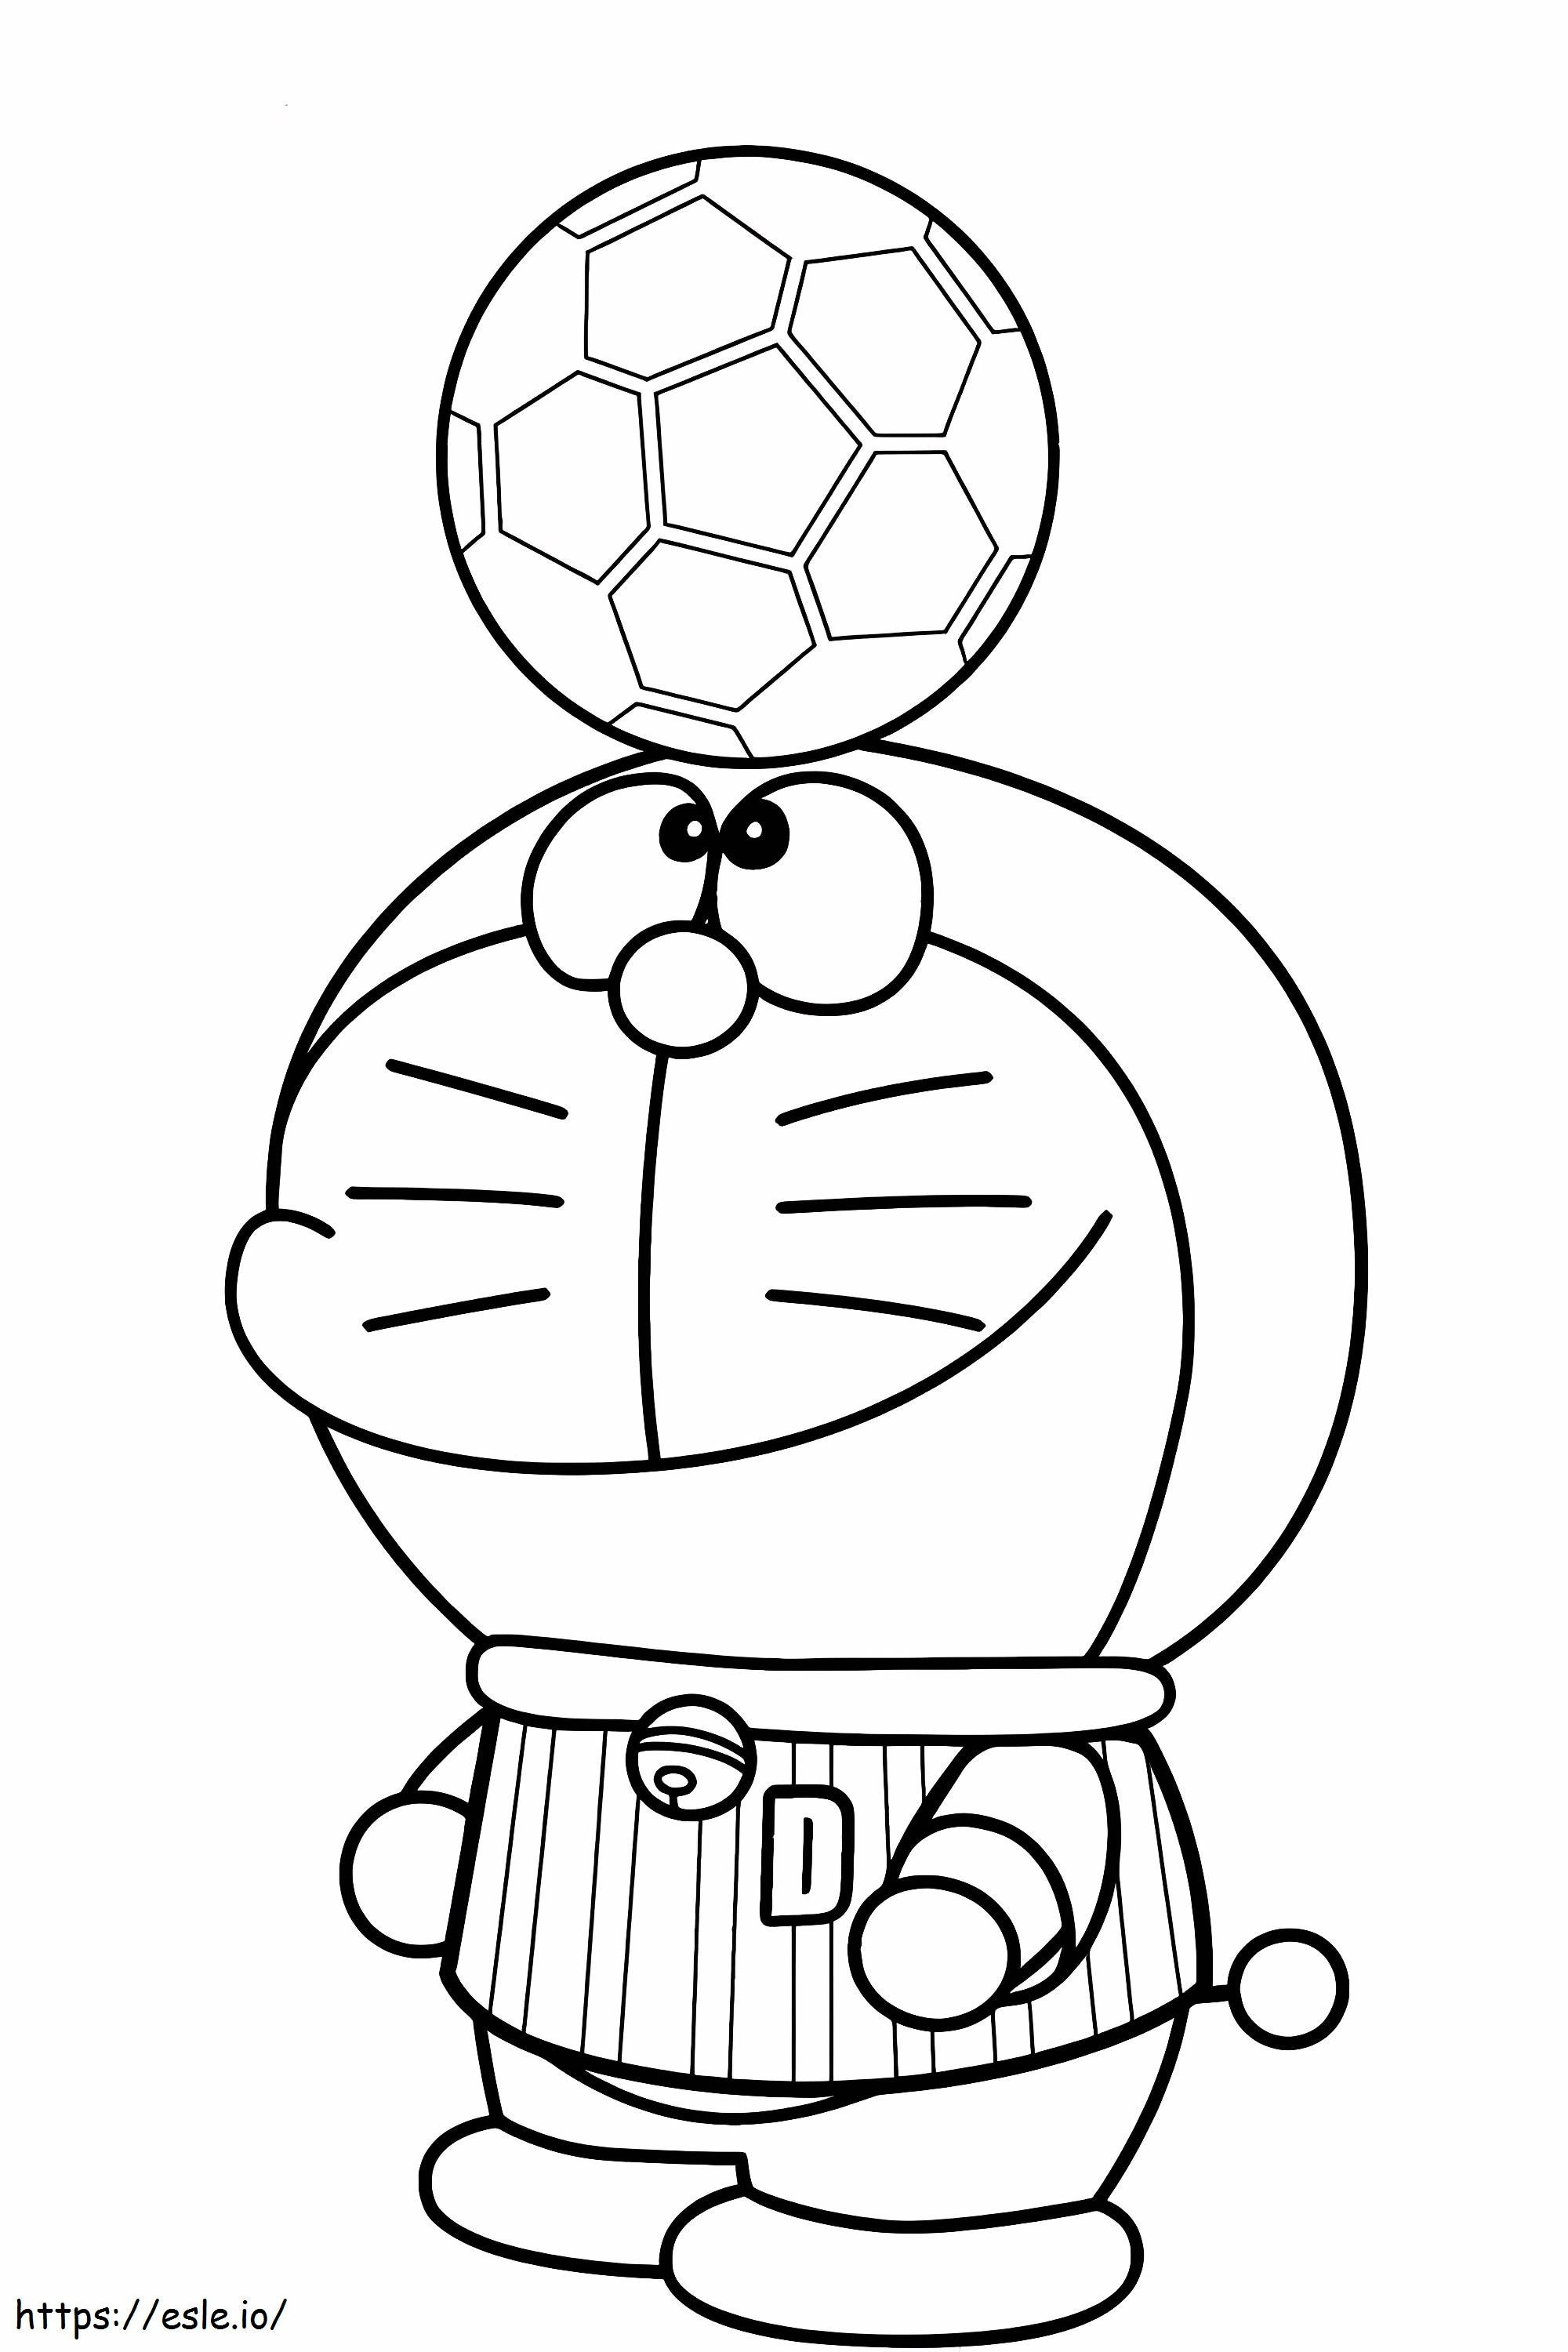 1540782584_I Love Soccer Kaunis Doraemon värityssivut Line Magician Doraemon Of I Love Soccer värityskuva